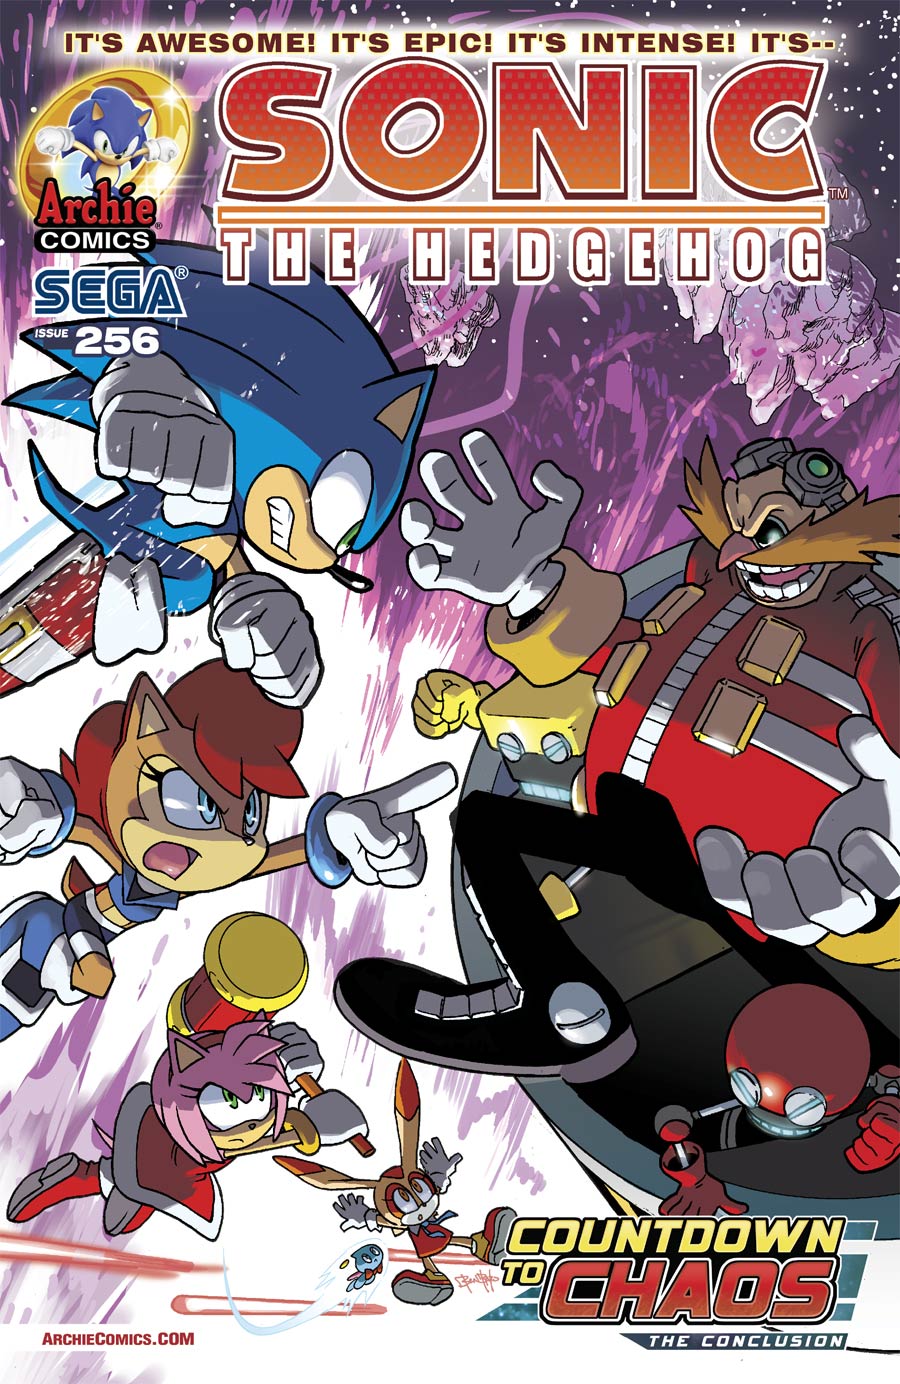 Sonic The Hedgehog Vol 2 #256 Cover A Regular Ben Bates Cover